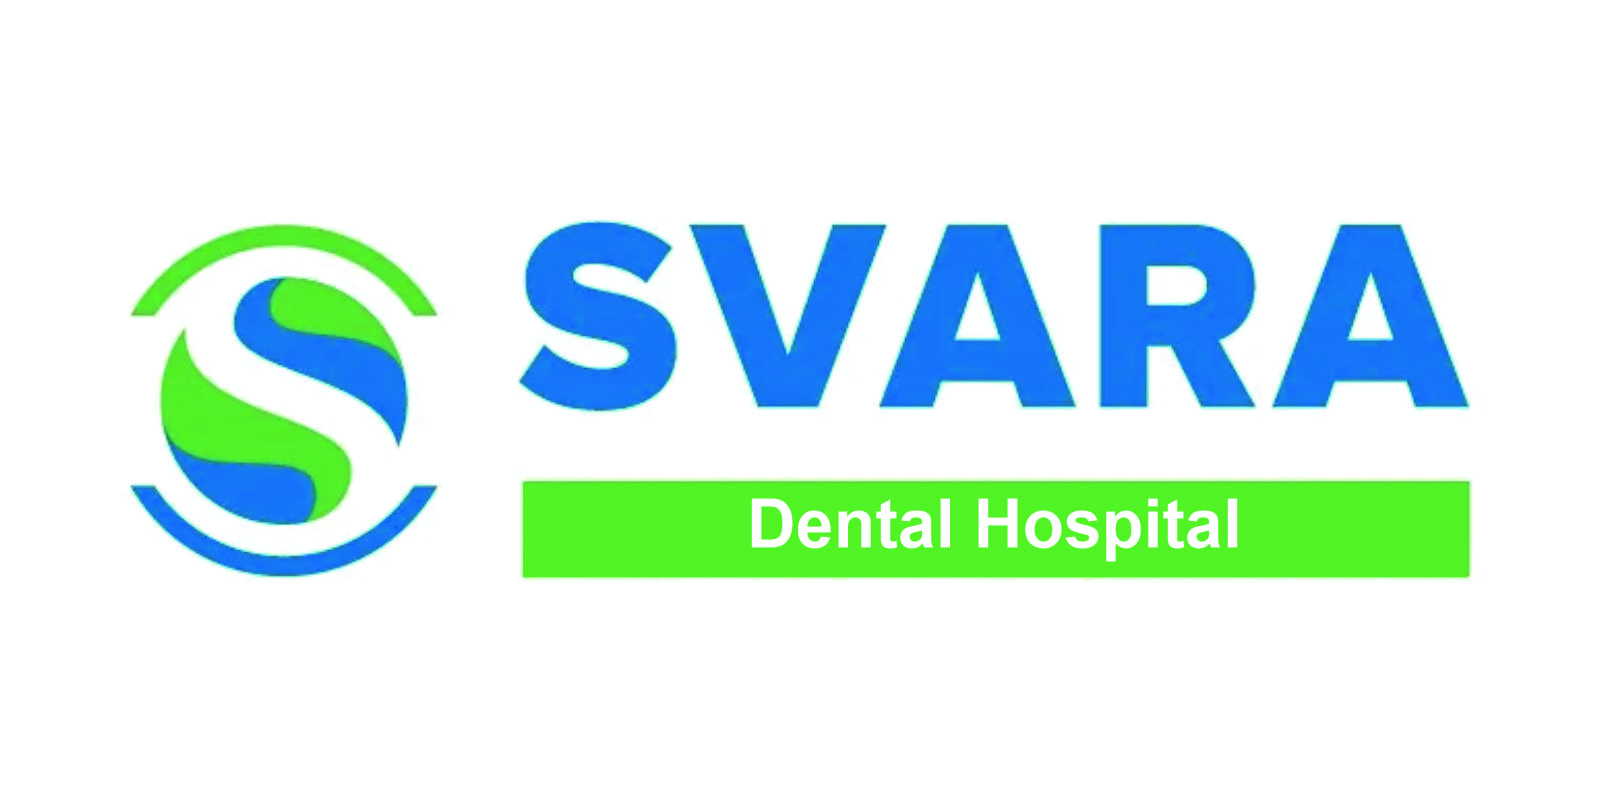 SWARA_DENTAL HOSPITAL_LOGO